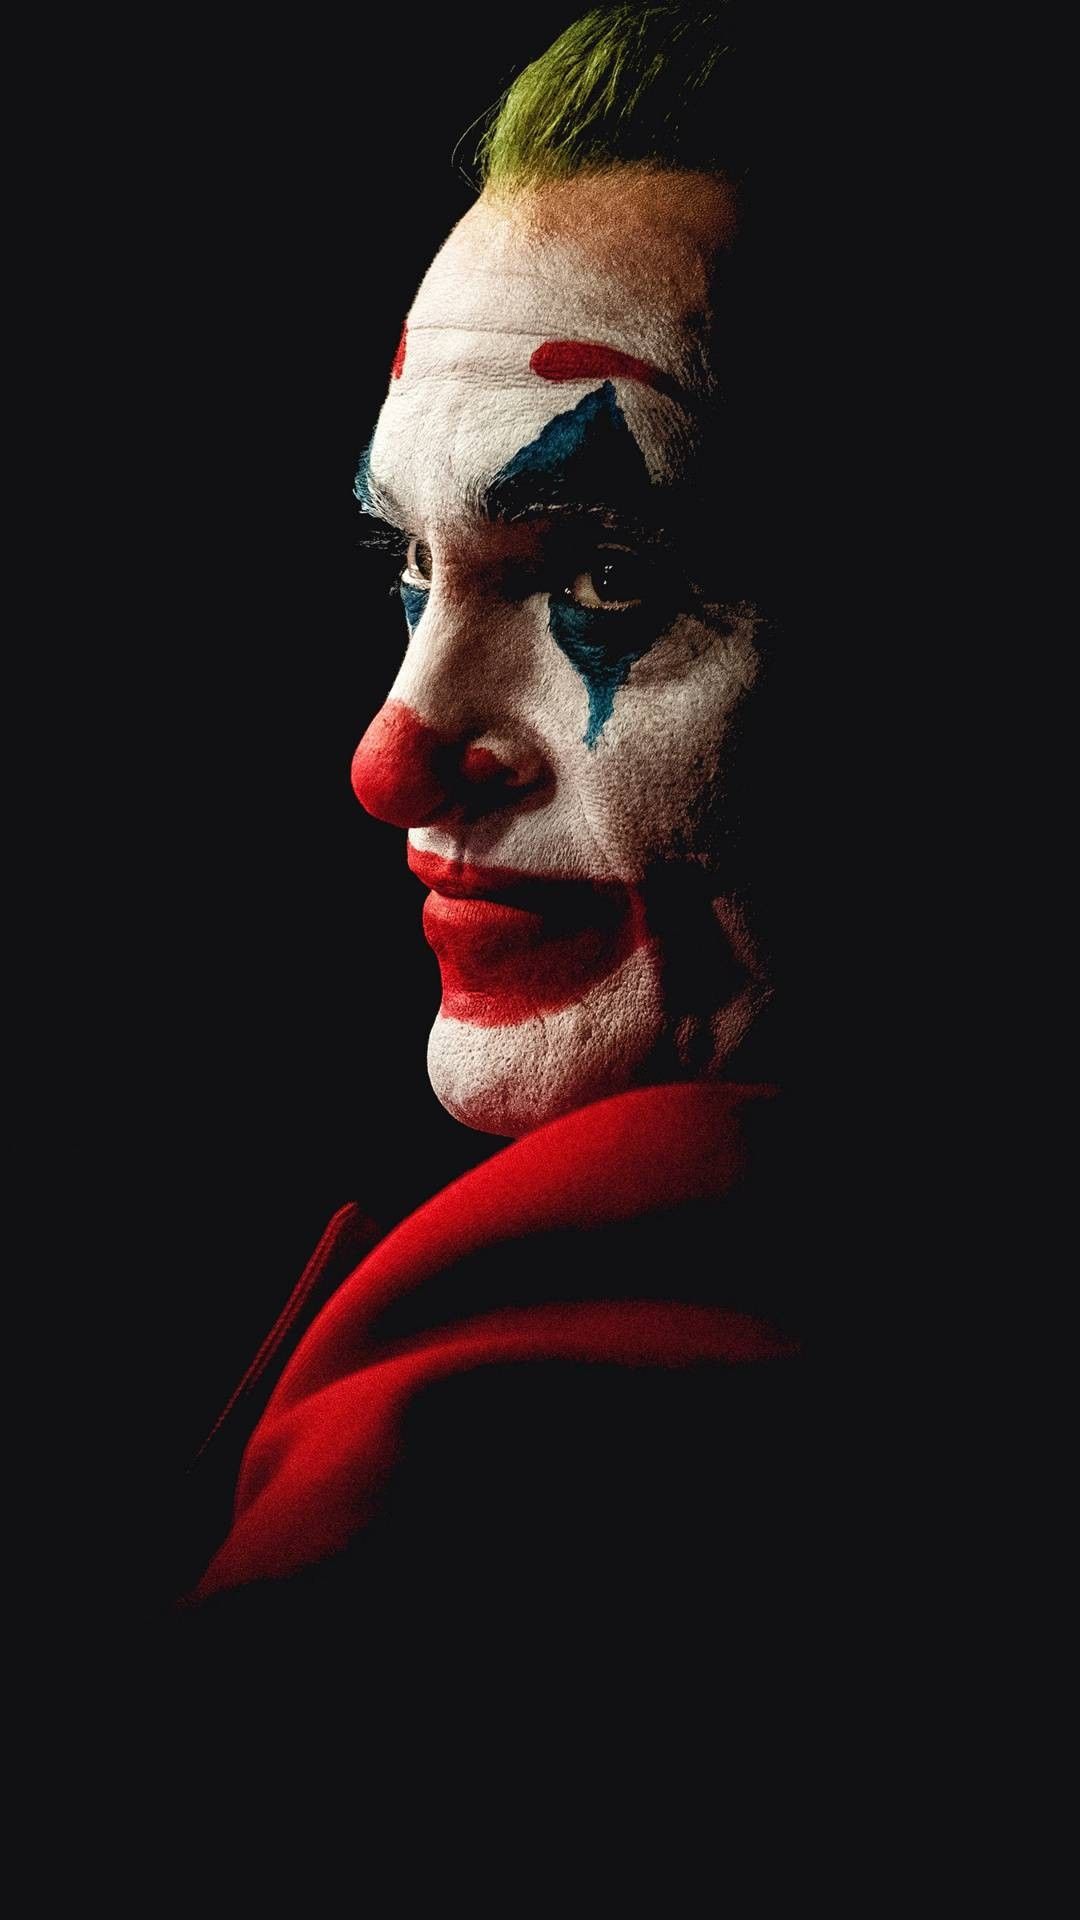 Joker Photo 2020 Wallpapers